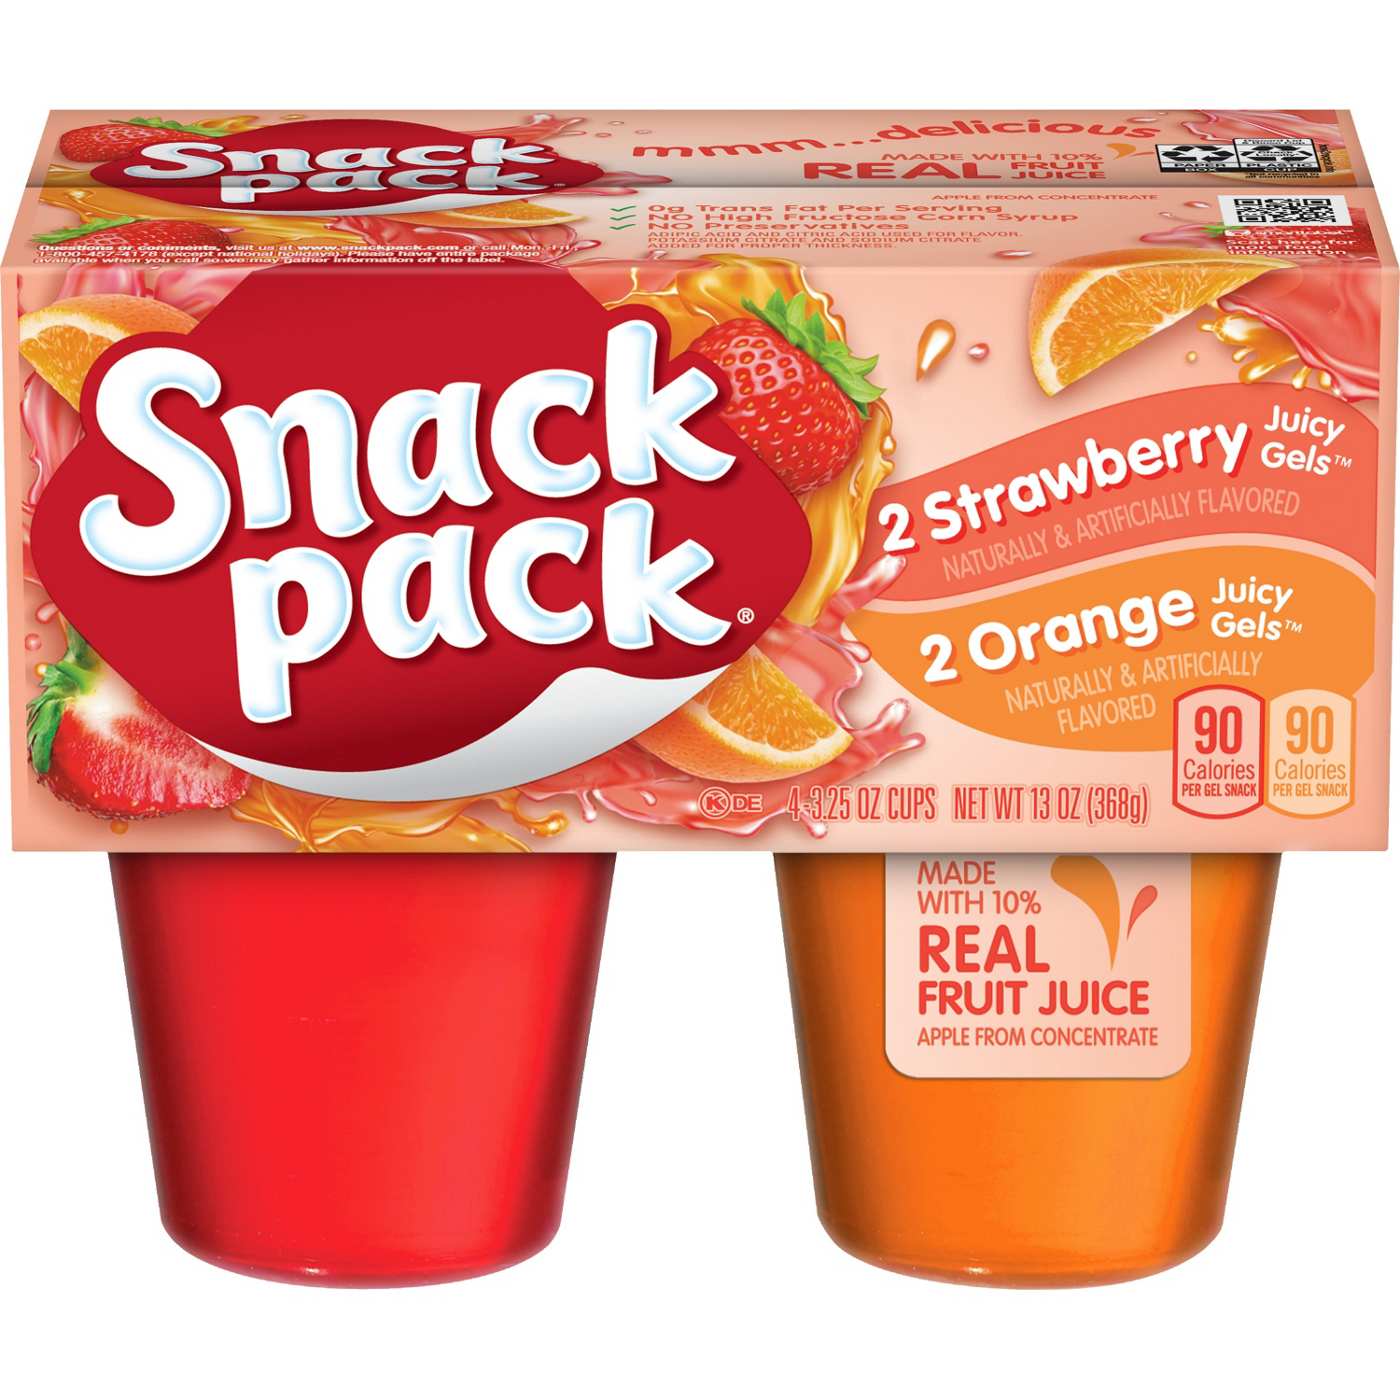 Snack Pack Strawberry & Orange Juicy Gels Cups; image 1 of 7